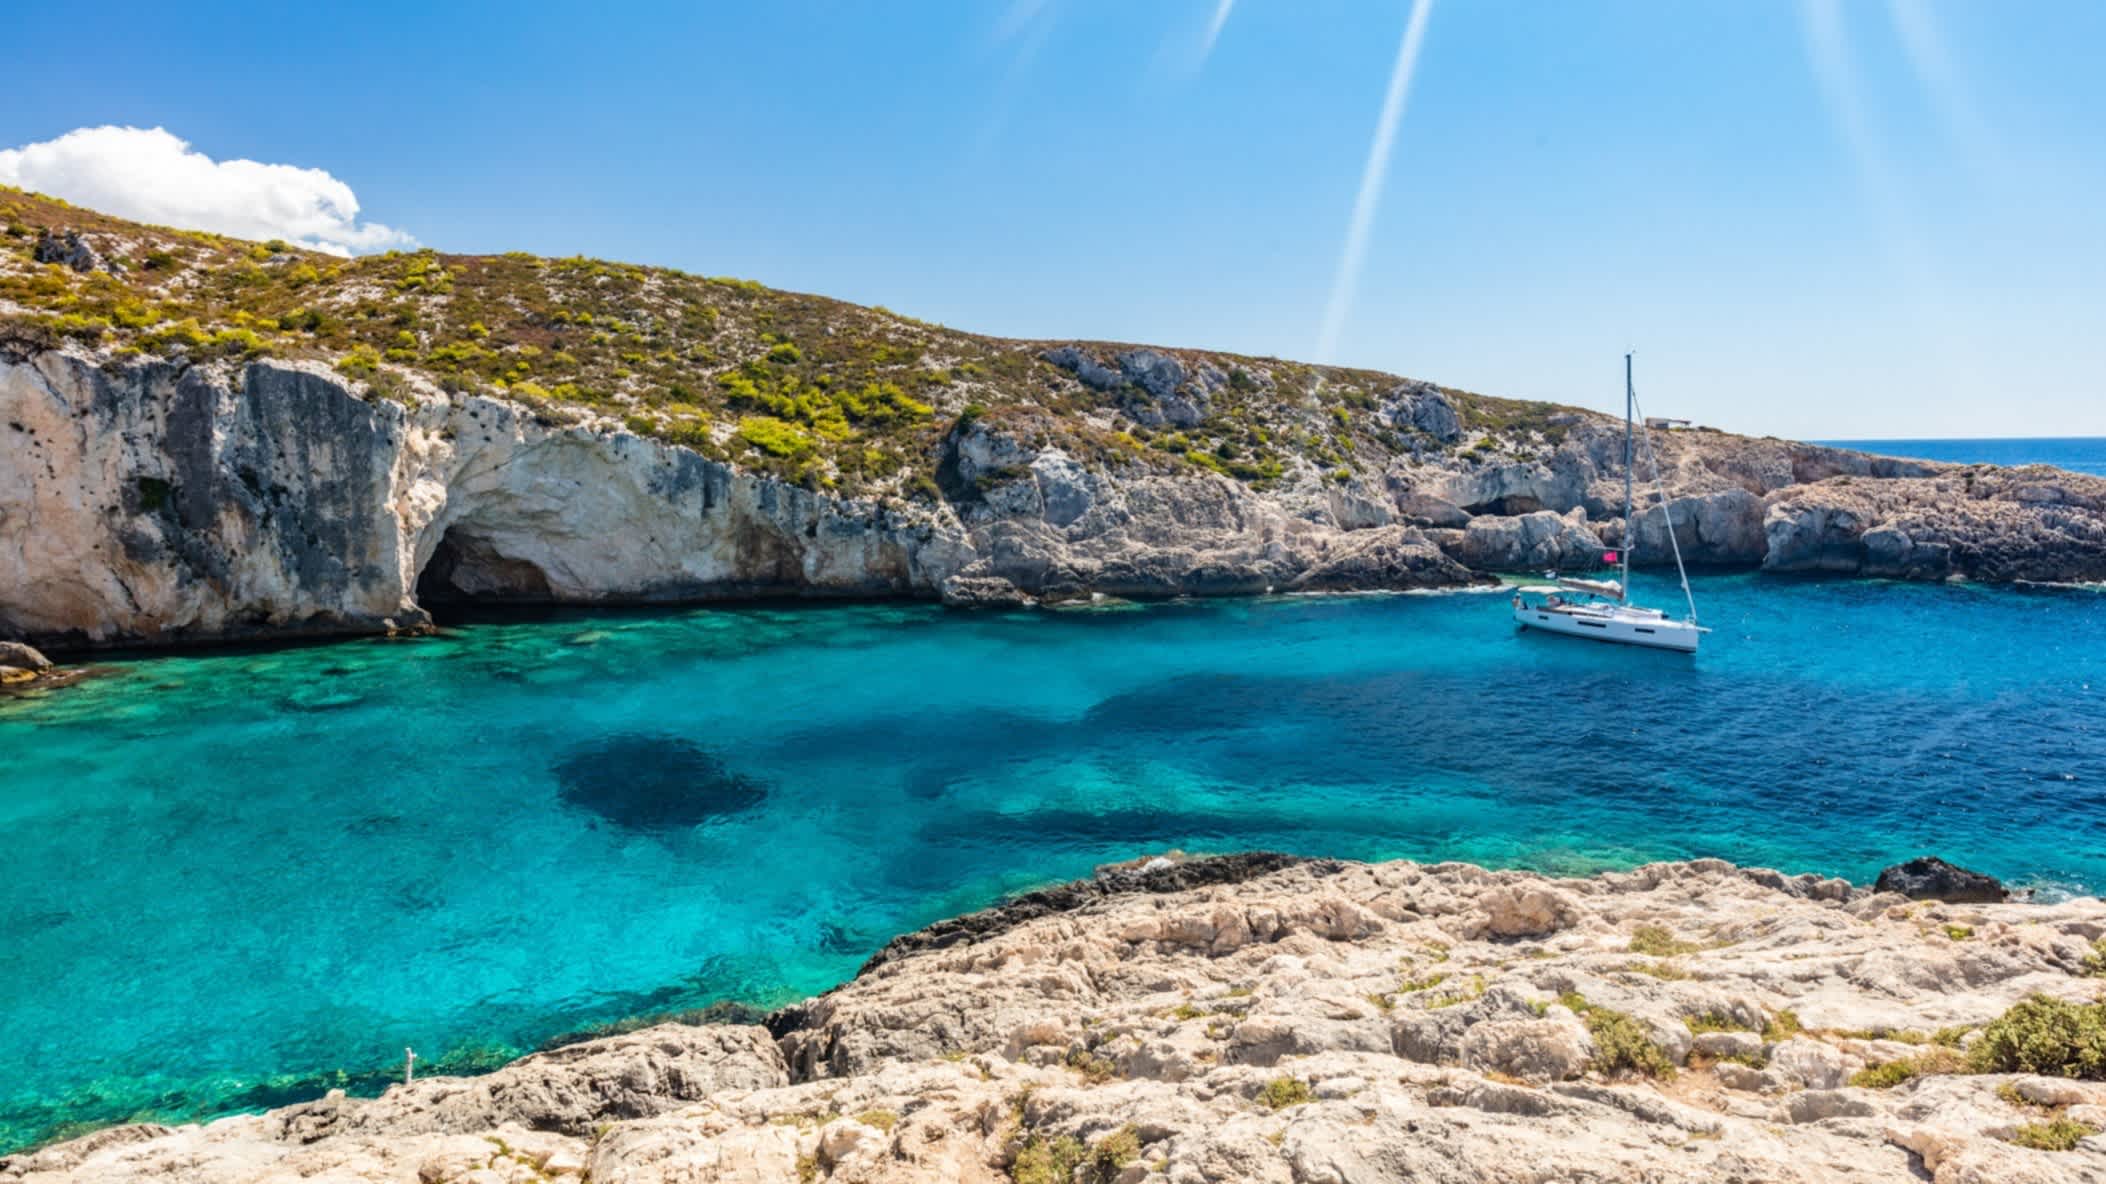 Kristallklares Wasser mit Höhlen am Strand von Limnionas, Zakynthos, Griechenland bei strahlendem Sonnenschein und mit einem Segelboot im Wasser.

